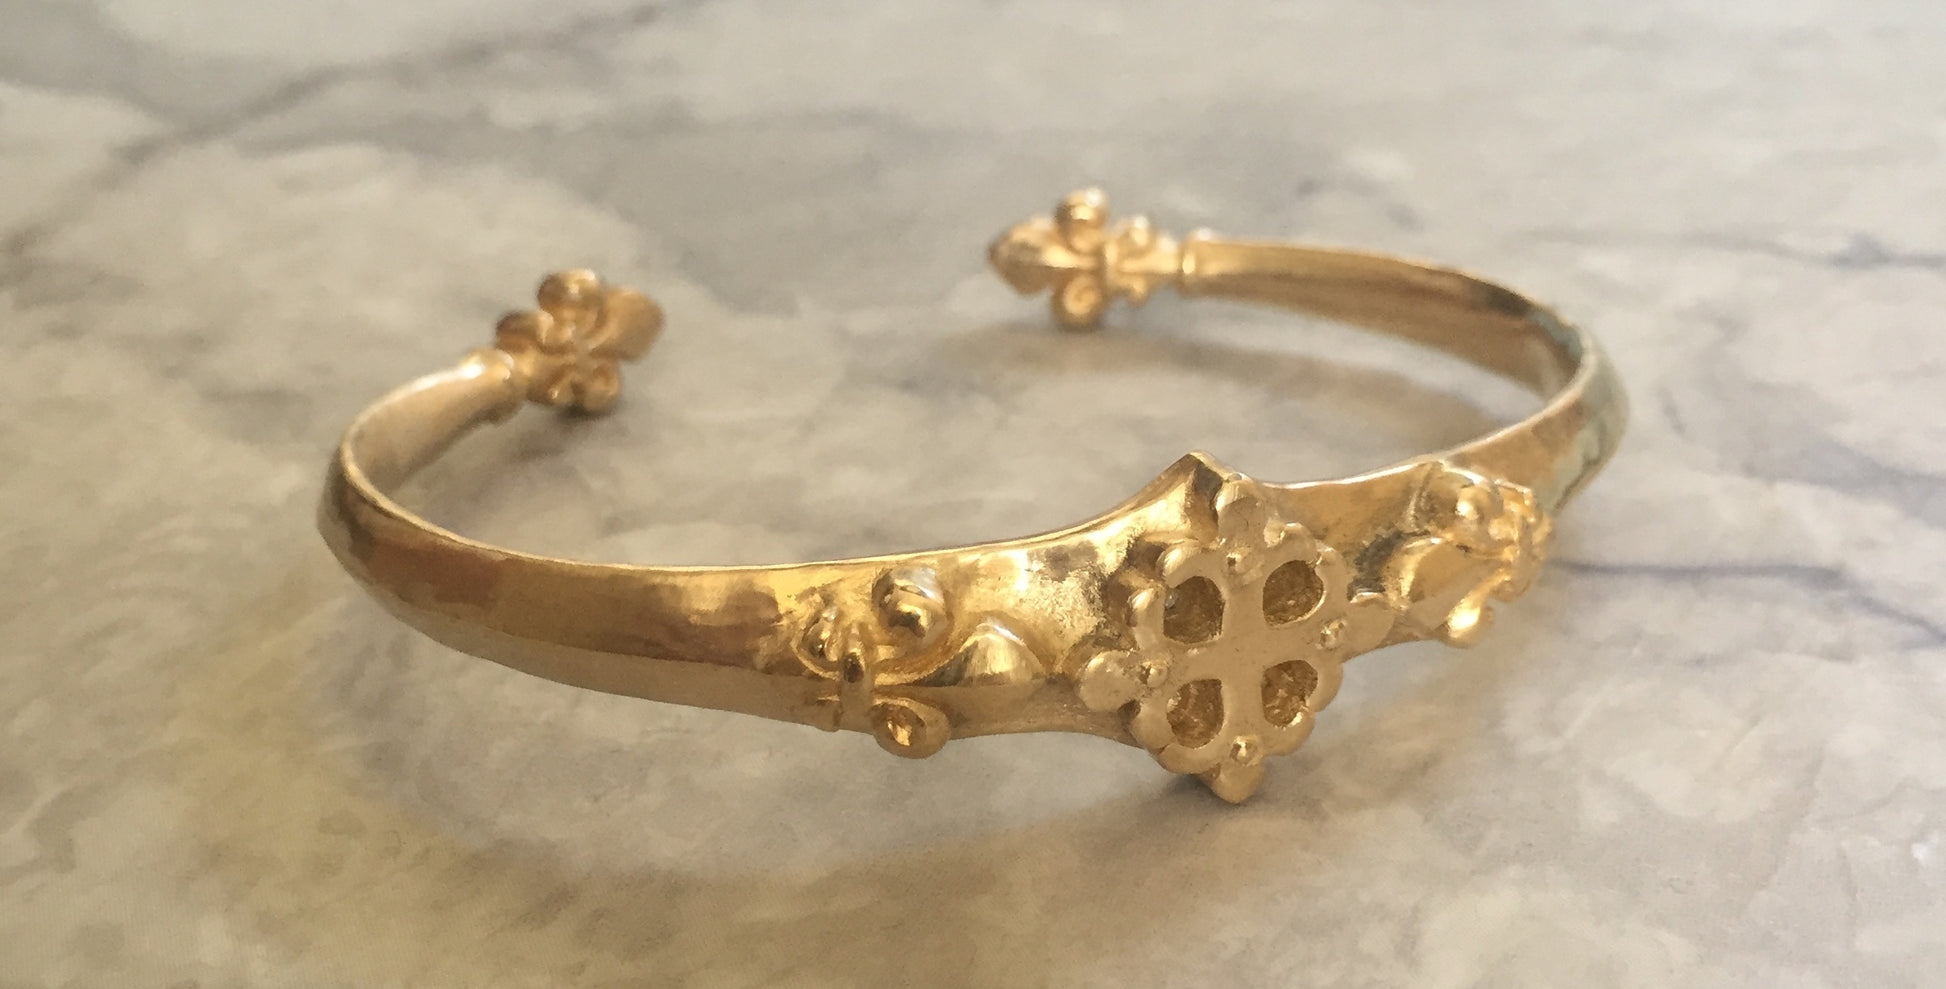 Bracelet - Gold Renaissance Fleur de Lis cuff in 14k gold by Roman Paul